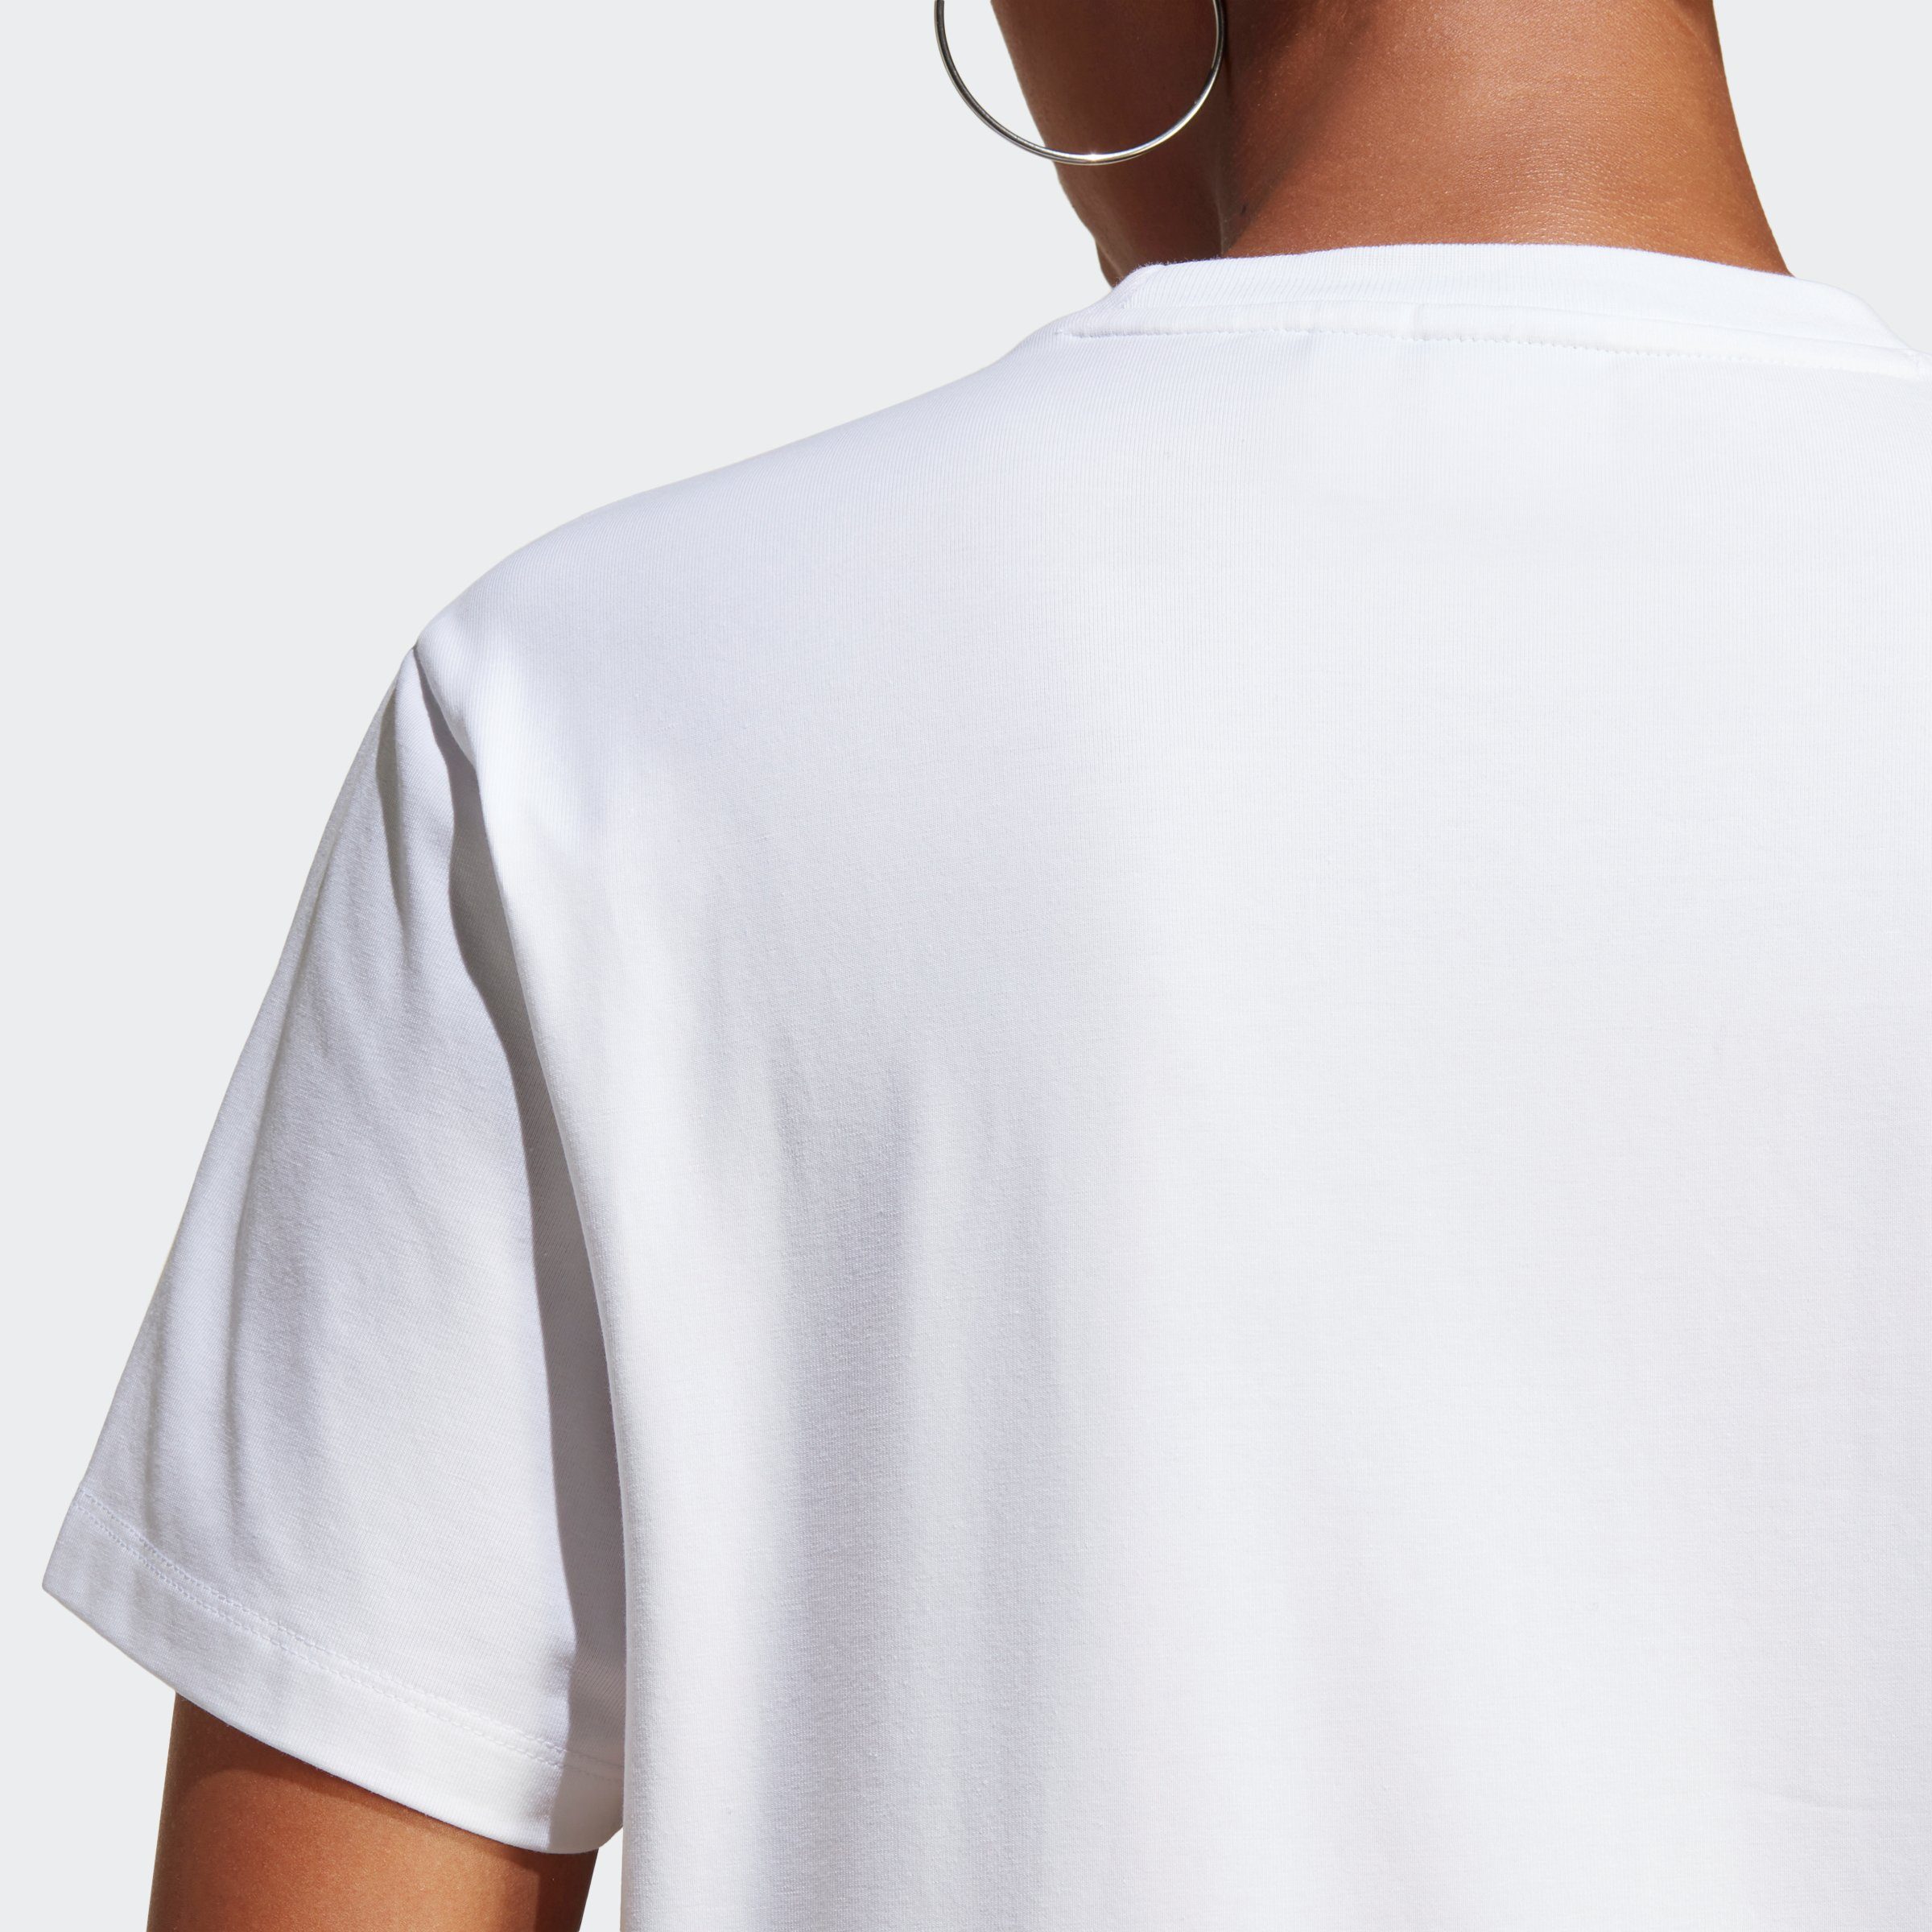 adidas T-Shirt White CLASSICS TREFOIL ADICOLOR Originals